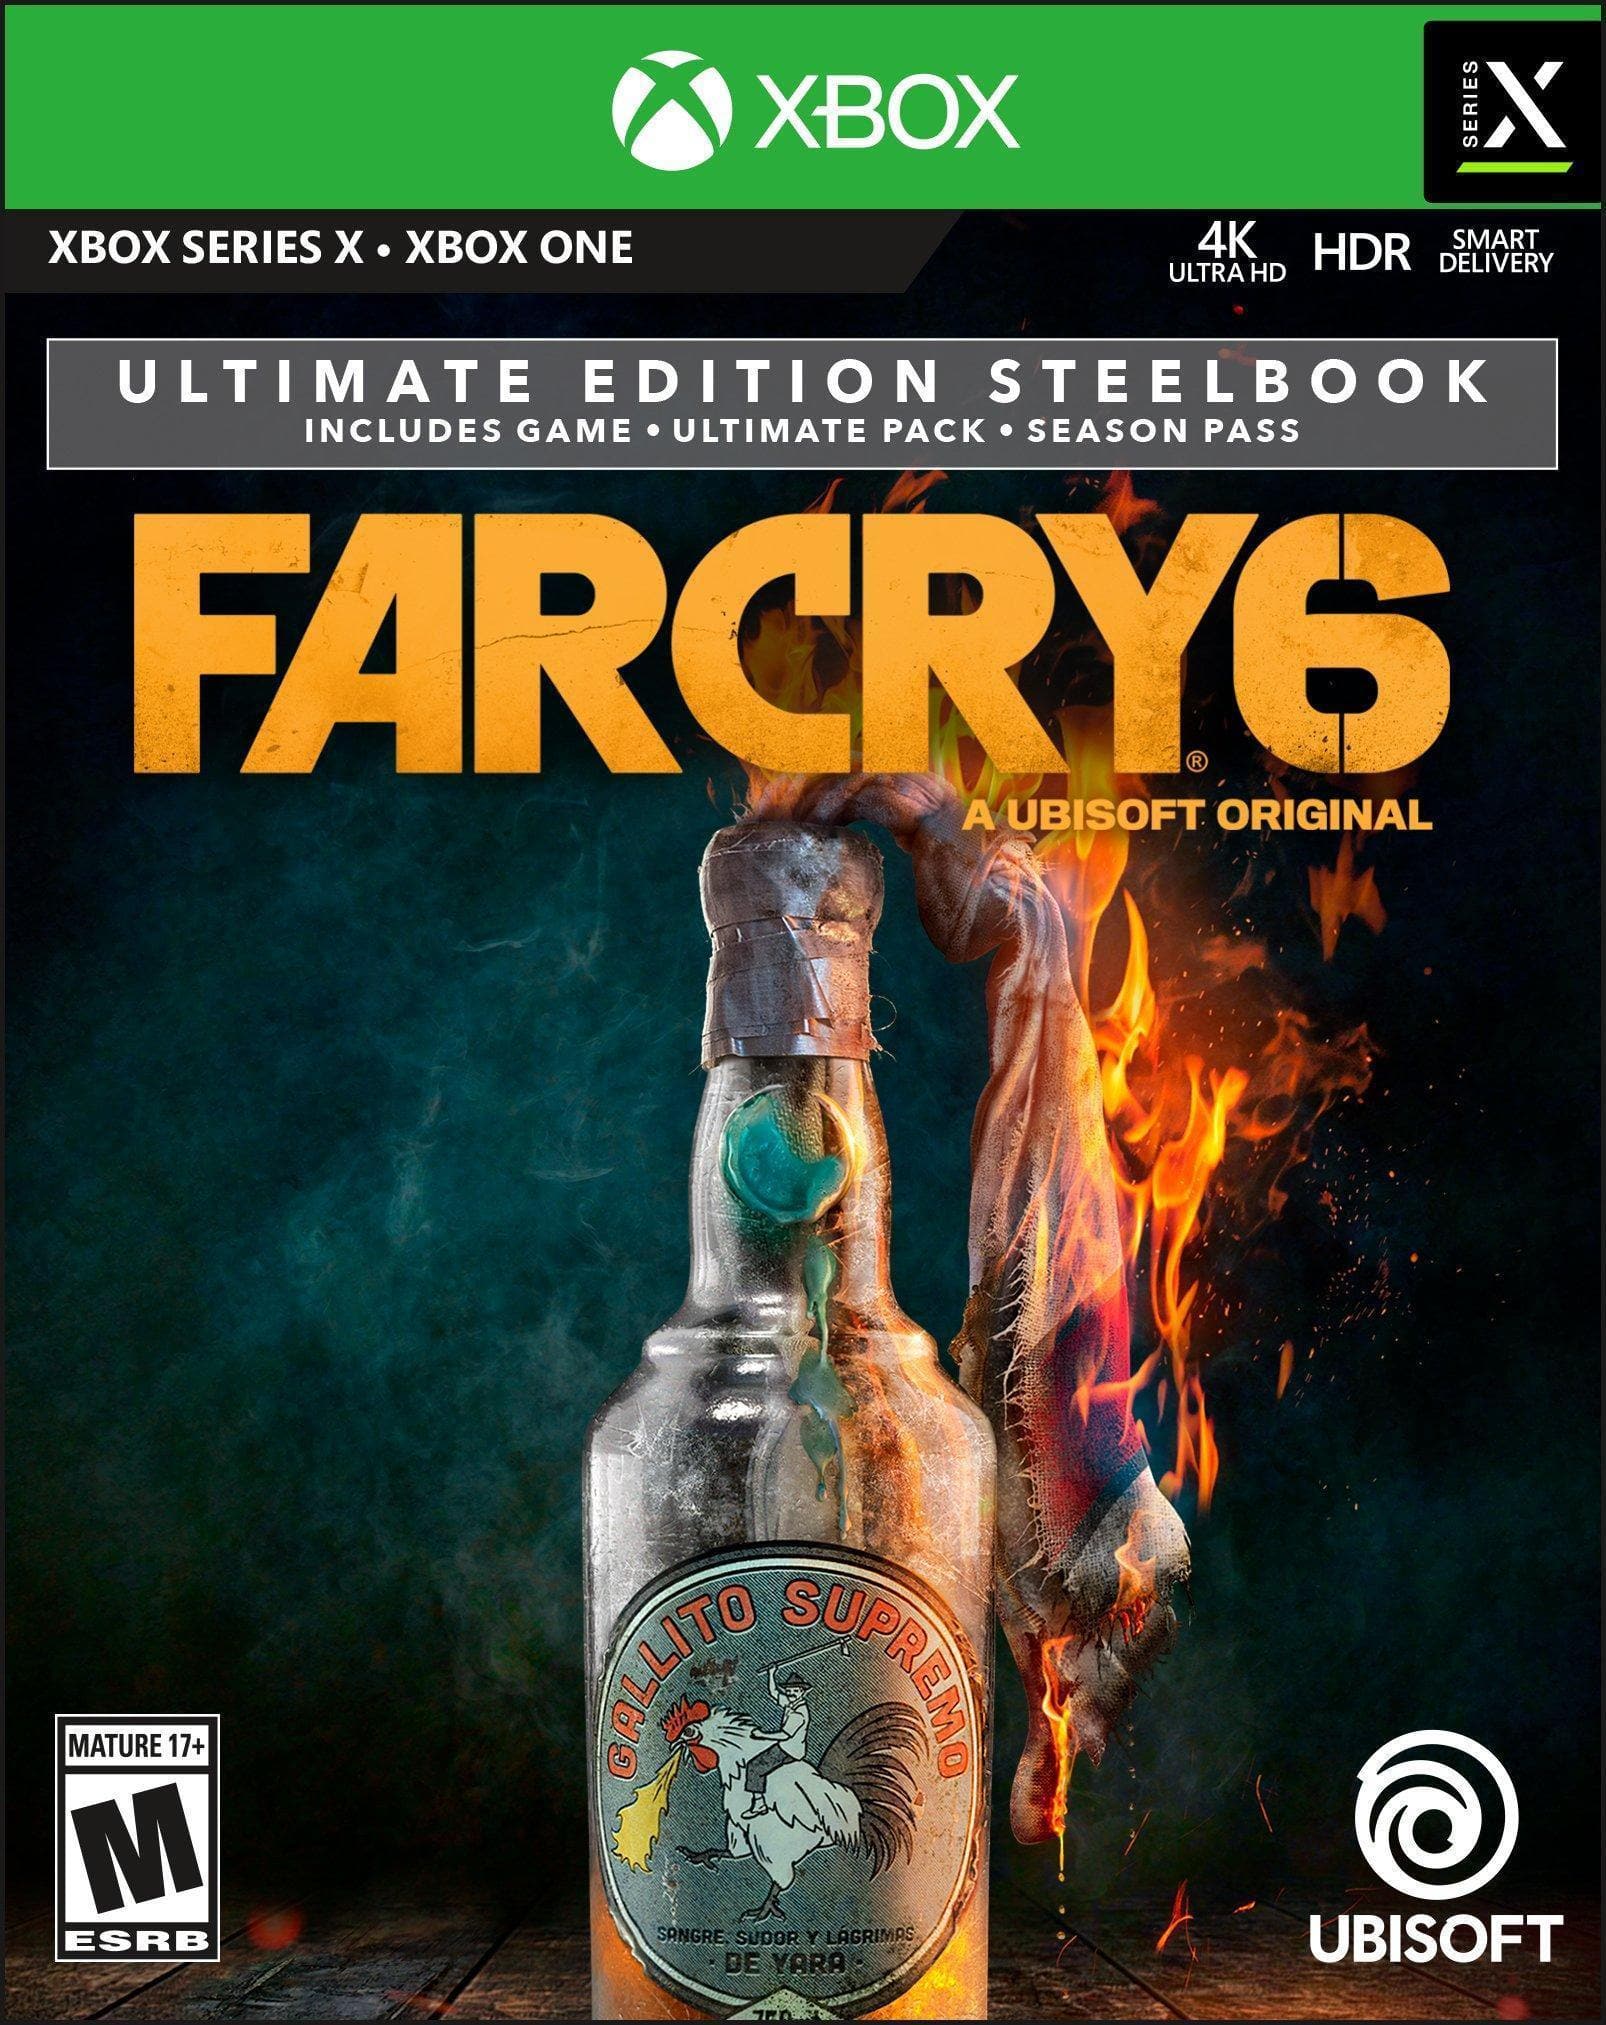 Far Cry 6 (Ultimate Edition) - Xbox One | Series X/S - EXON - גיימינג ותוכנות - משחקים ותוכנות למחשב ולאקס בוקס!